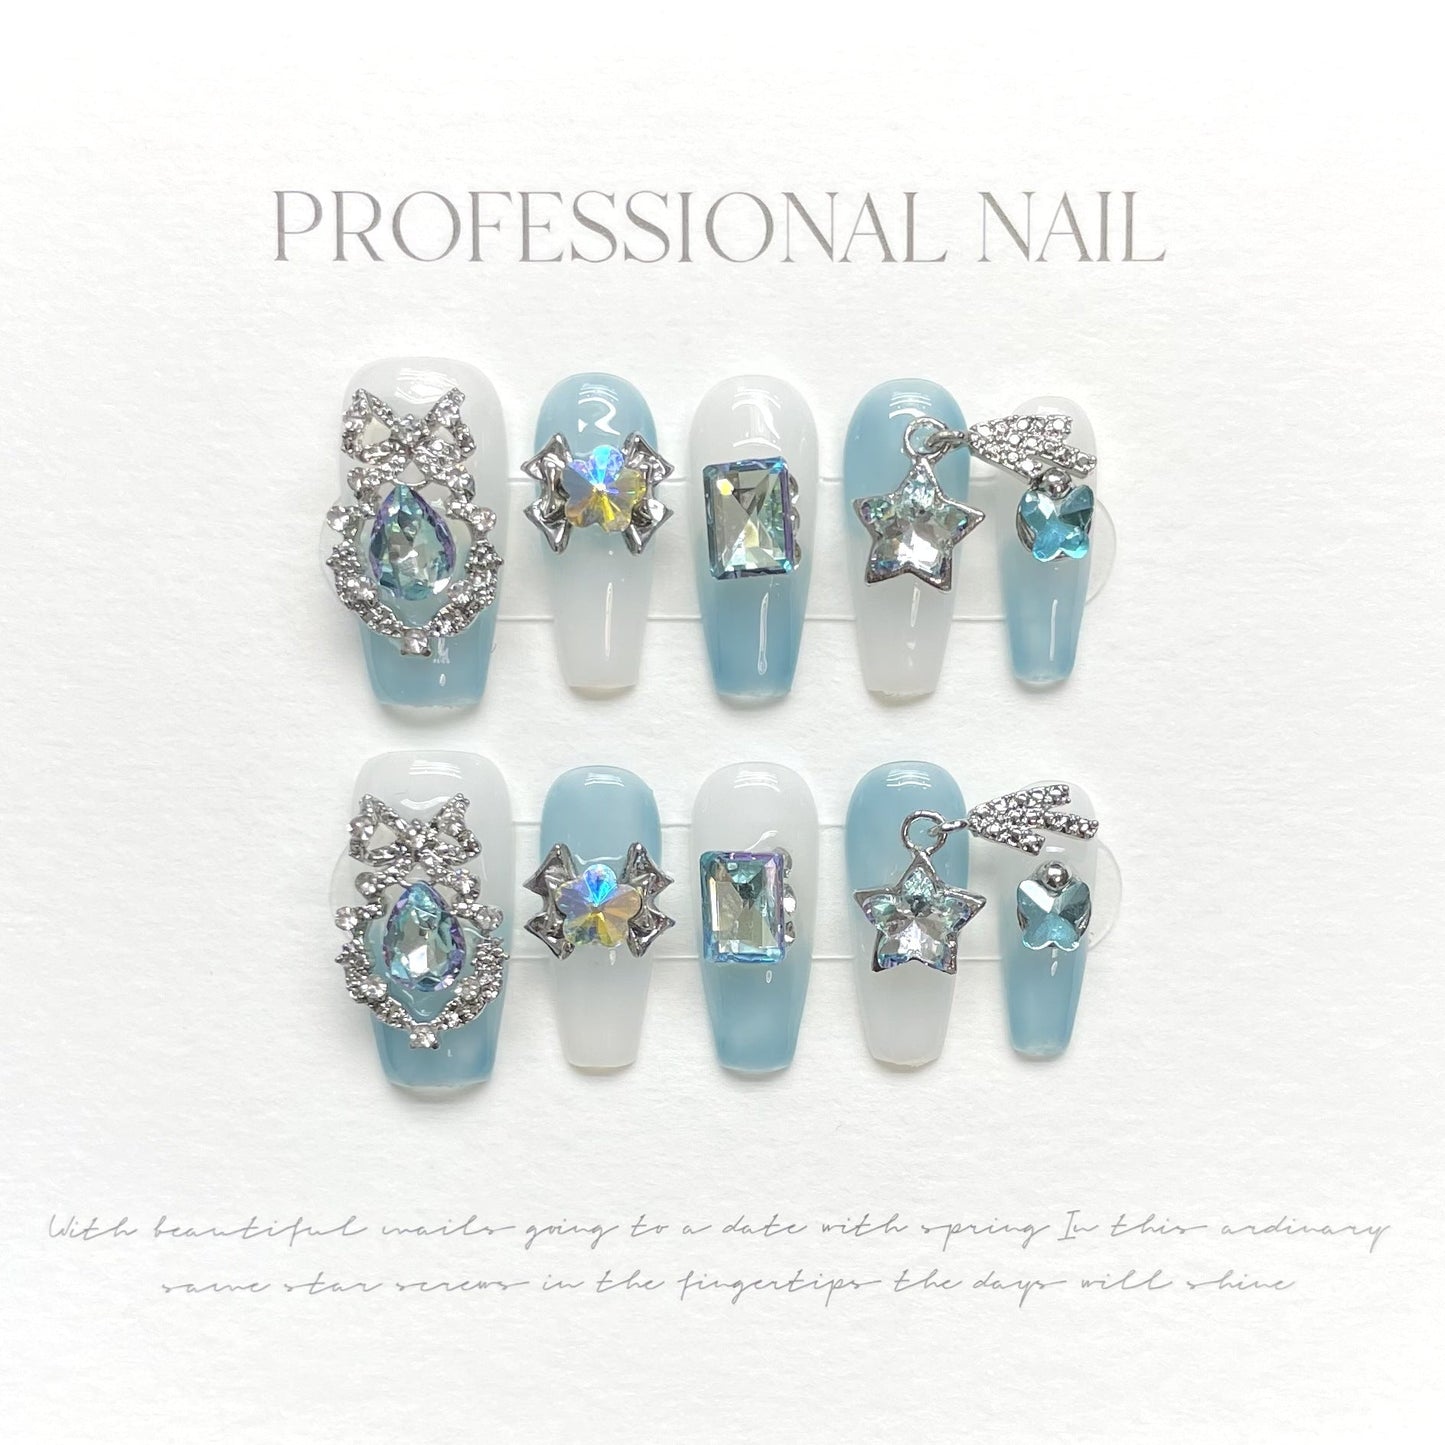 1026 Vlinderbloemen stijl pers op nagels 100% handgemaakte kunstnagels blauw